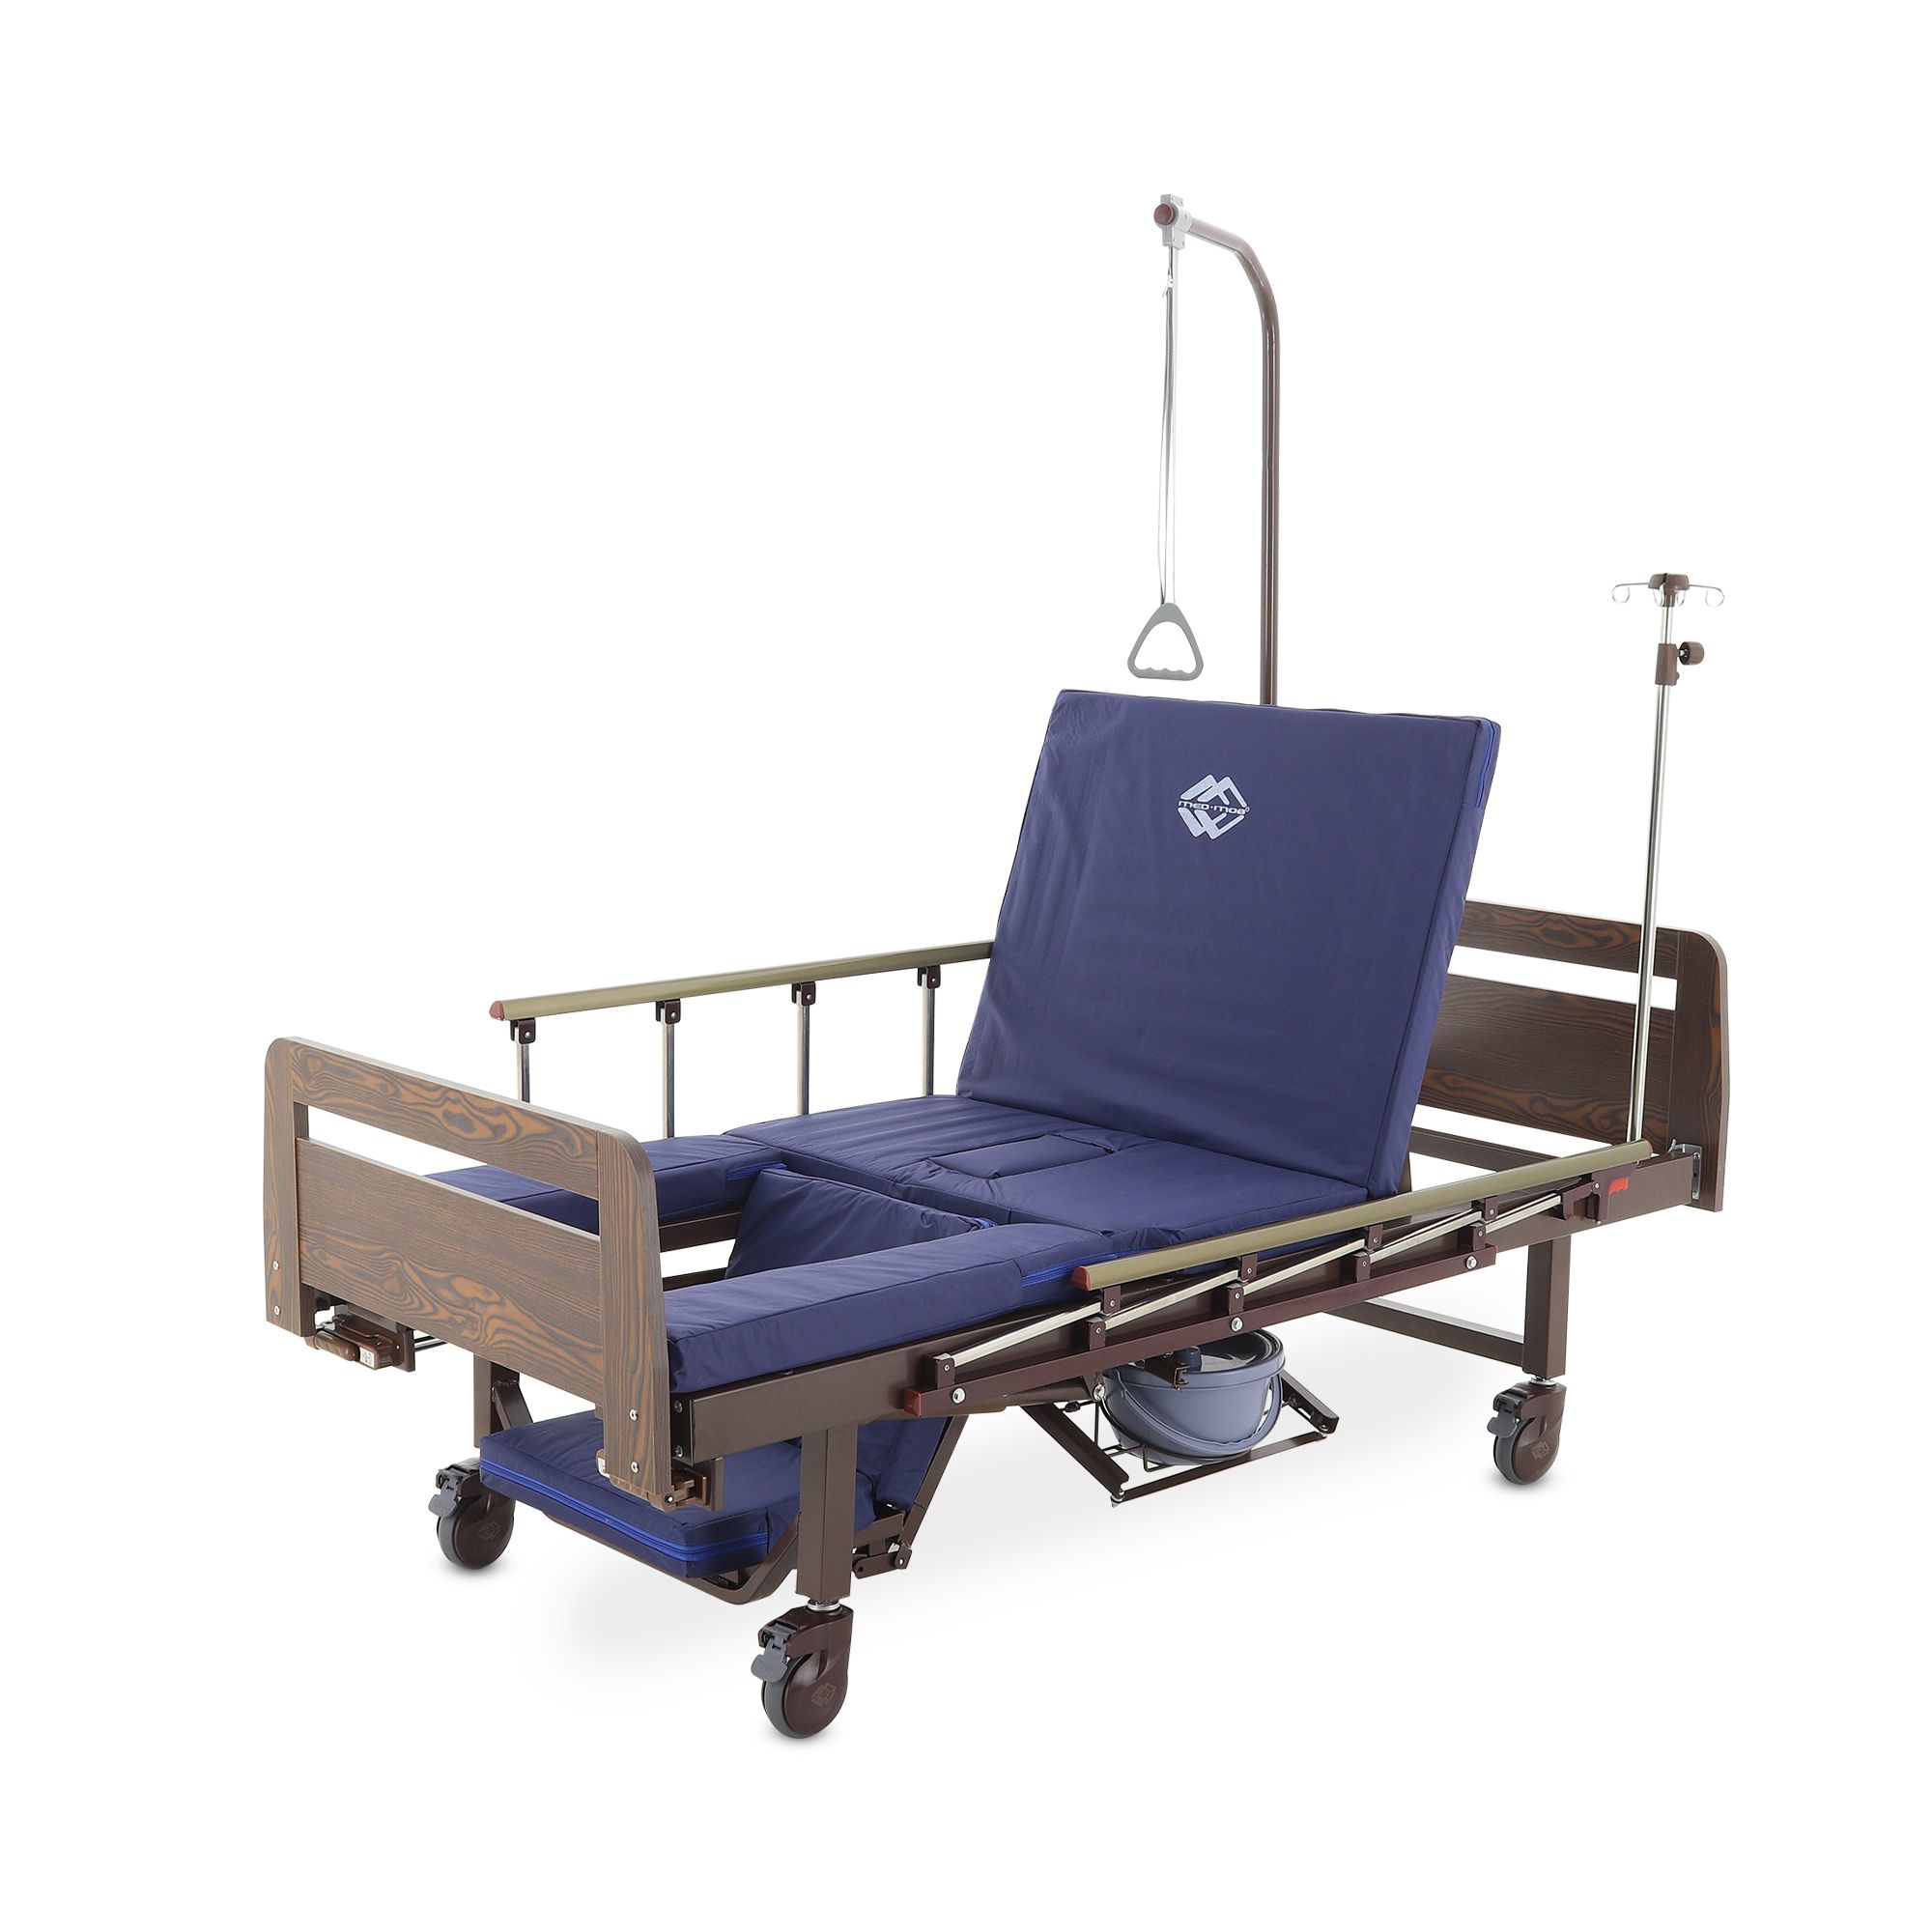 Авито купить медицинскую кровать для лежачих больных. Кровать механическая med-mos yg-6 мм-2124н-12. Кровать функциональная медицинская механическая «med-mos». Yg-5 кровать медицинская. Кровать функциональная медицинская yg-5.